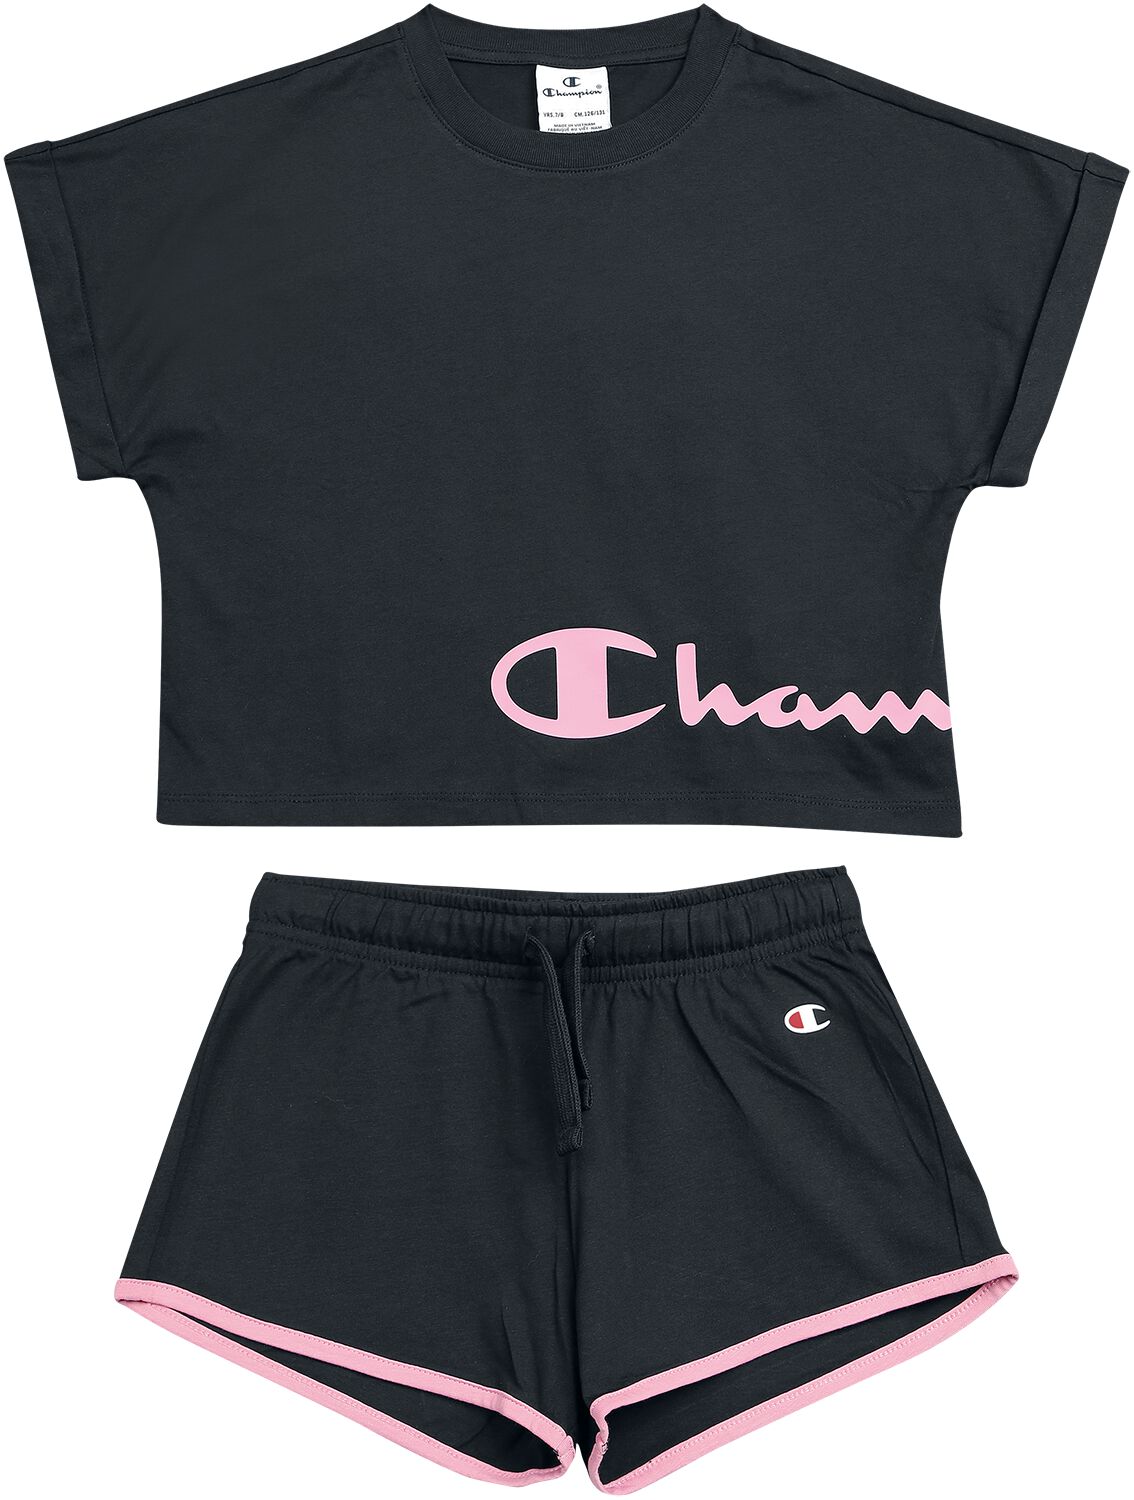 T-shirt de Champion - American Classics Set - 170/176 - pour filles - noir